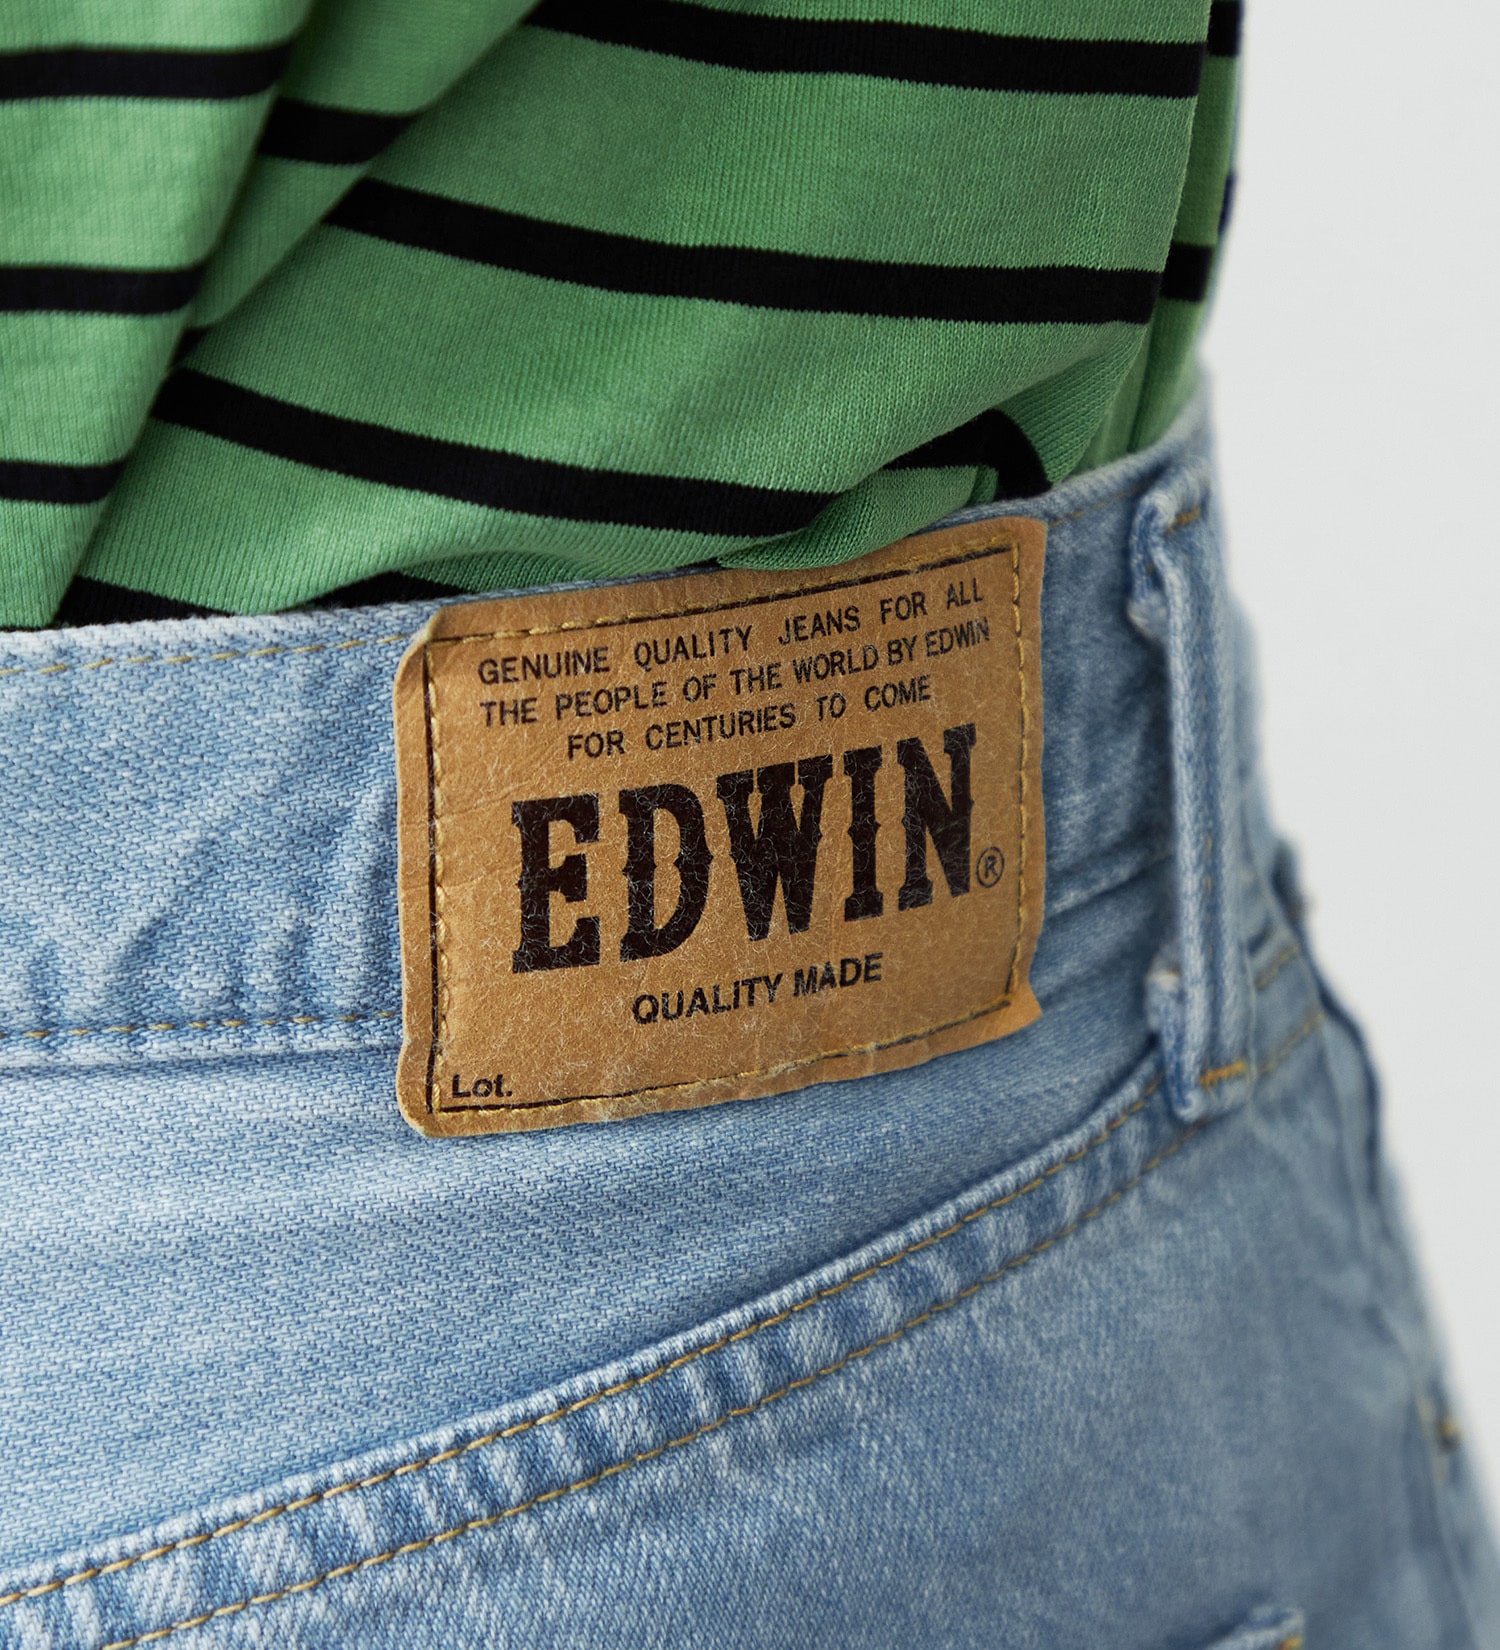 EDWIN(エドウイン)のEDWIN BASIC ショーツデニムパンツ|パンツ/デニムパンツ/メンズ|淡色ブルー